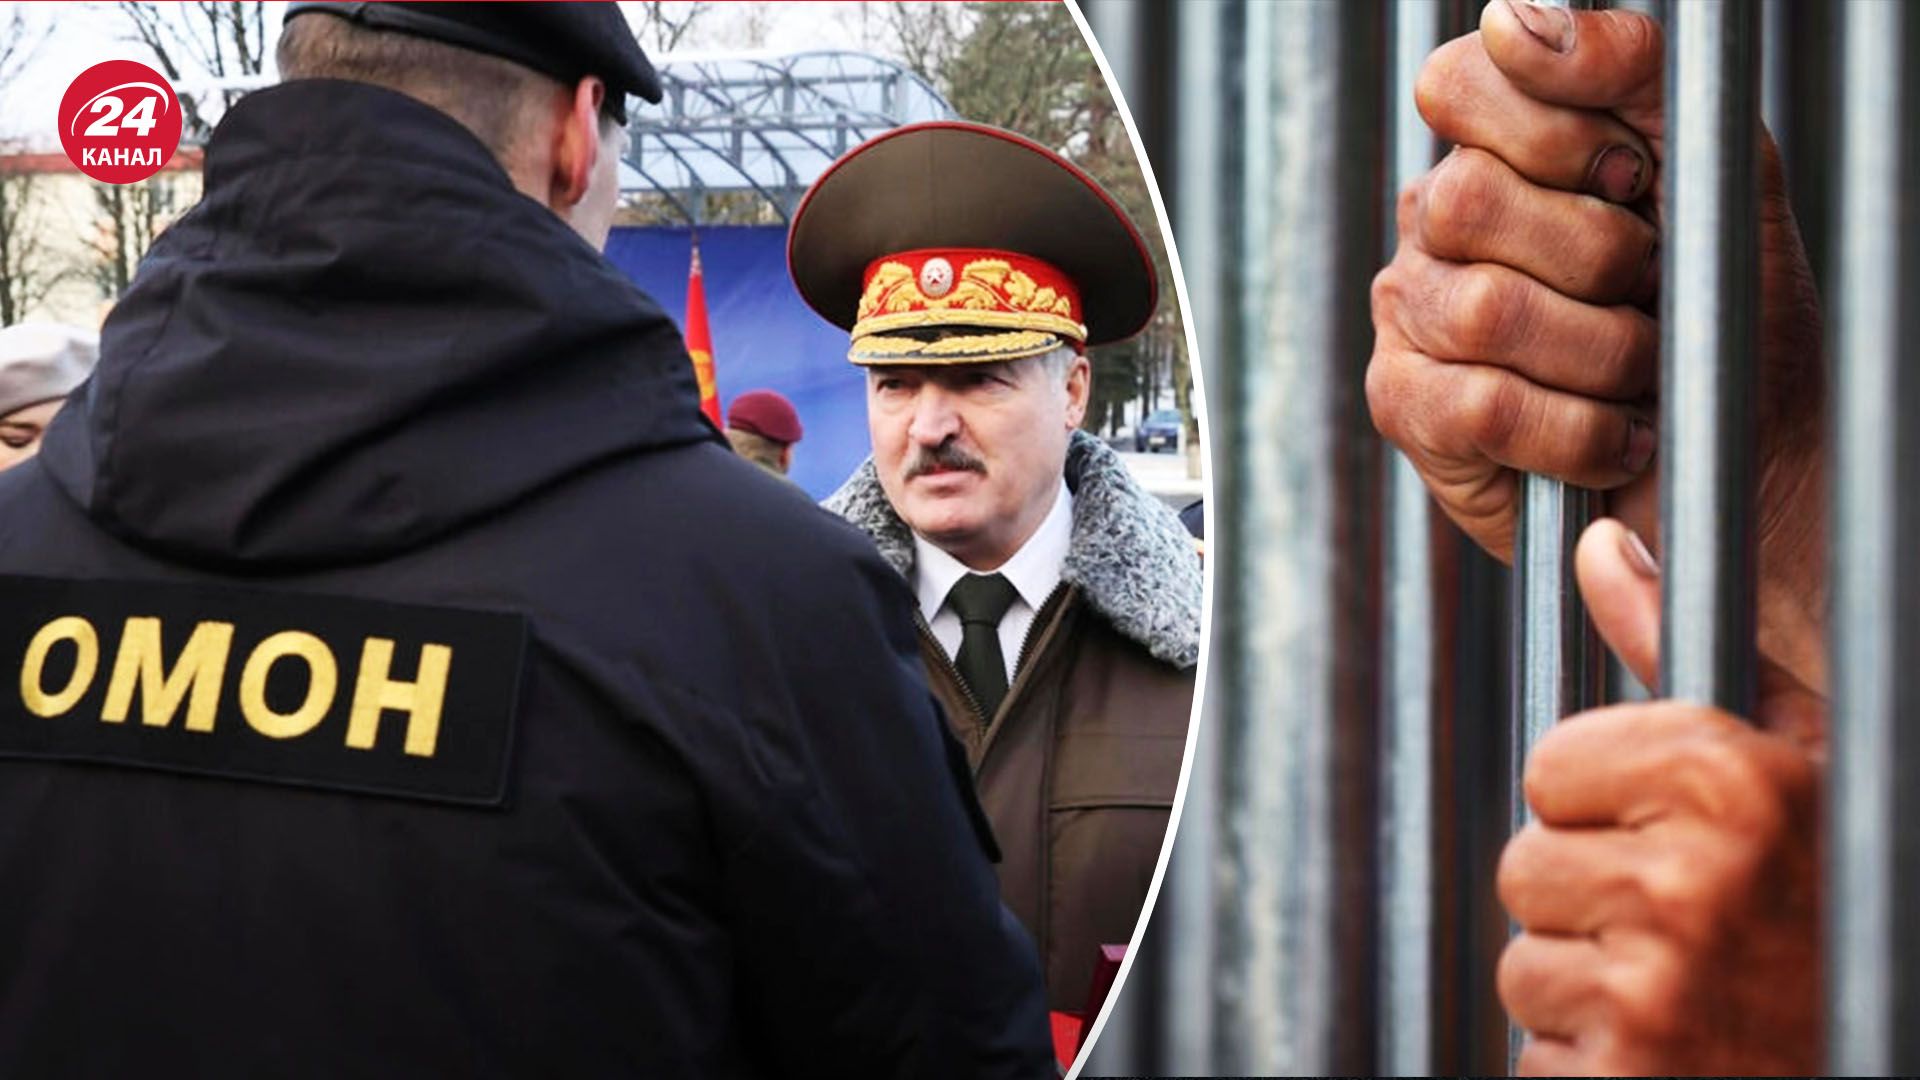 Лукашенко проводит репрессии в Беларуси - за что задерживают людей - 24 Канал